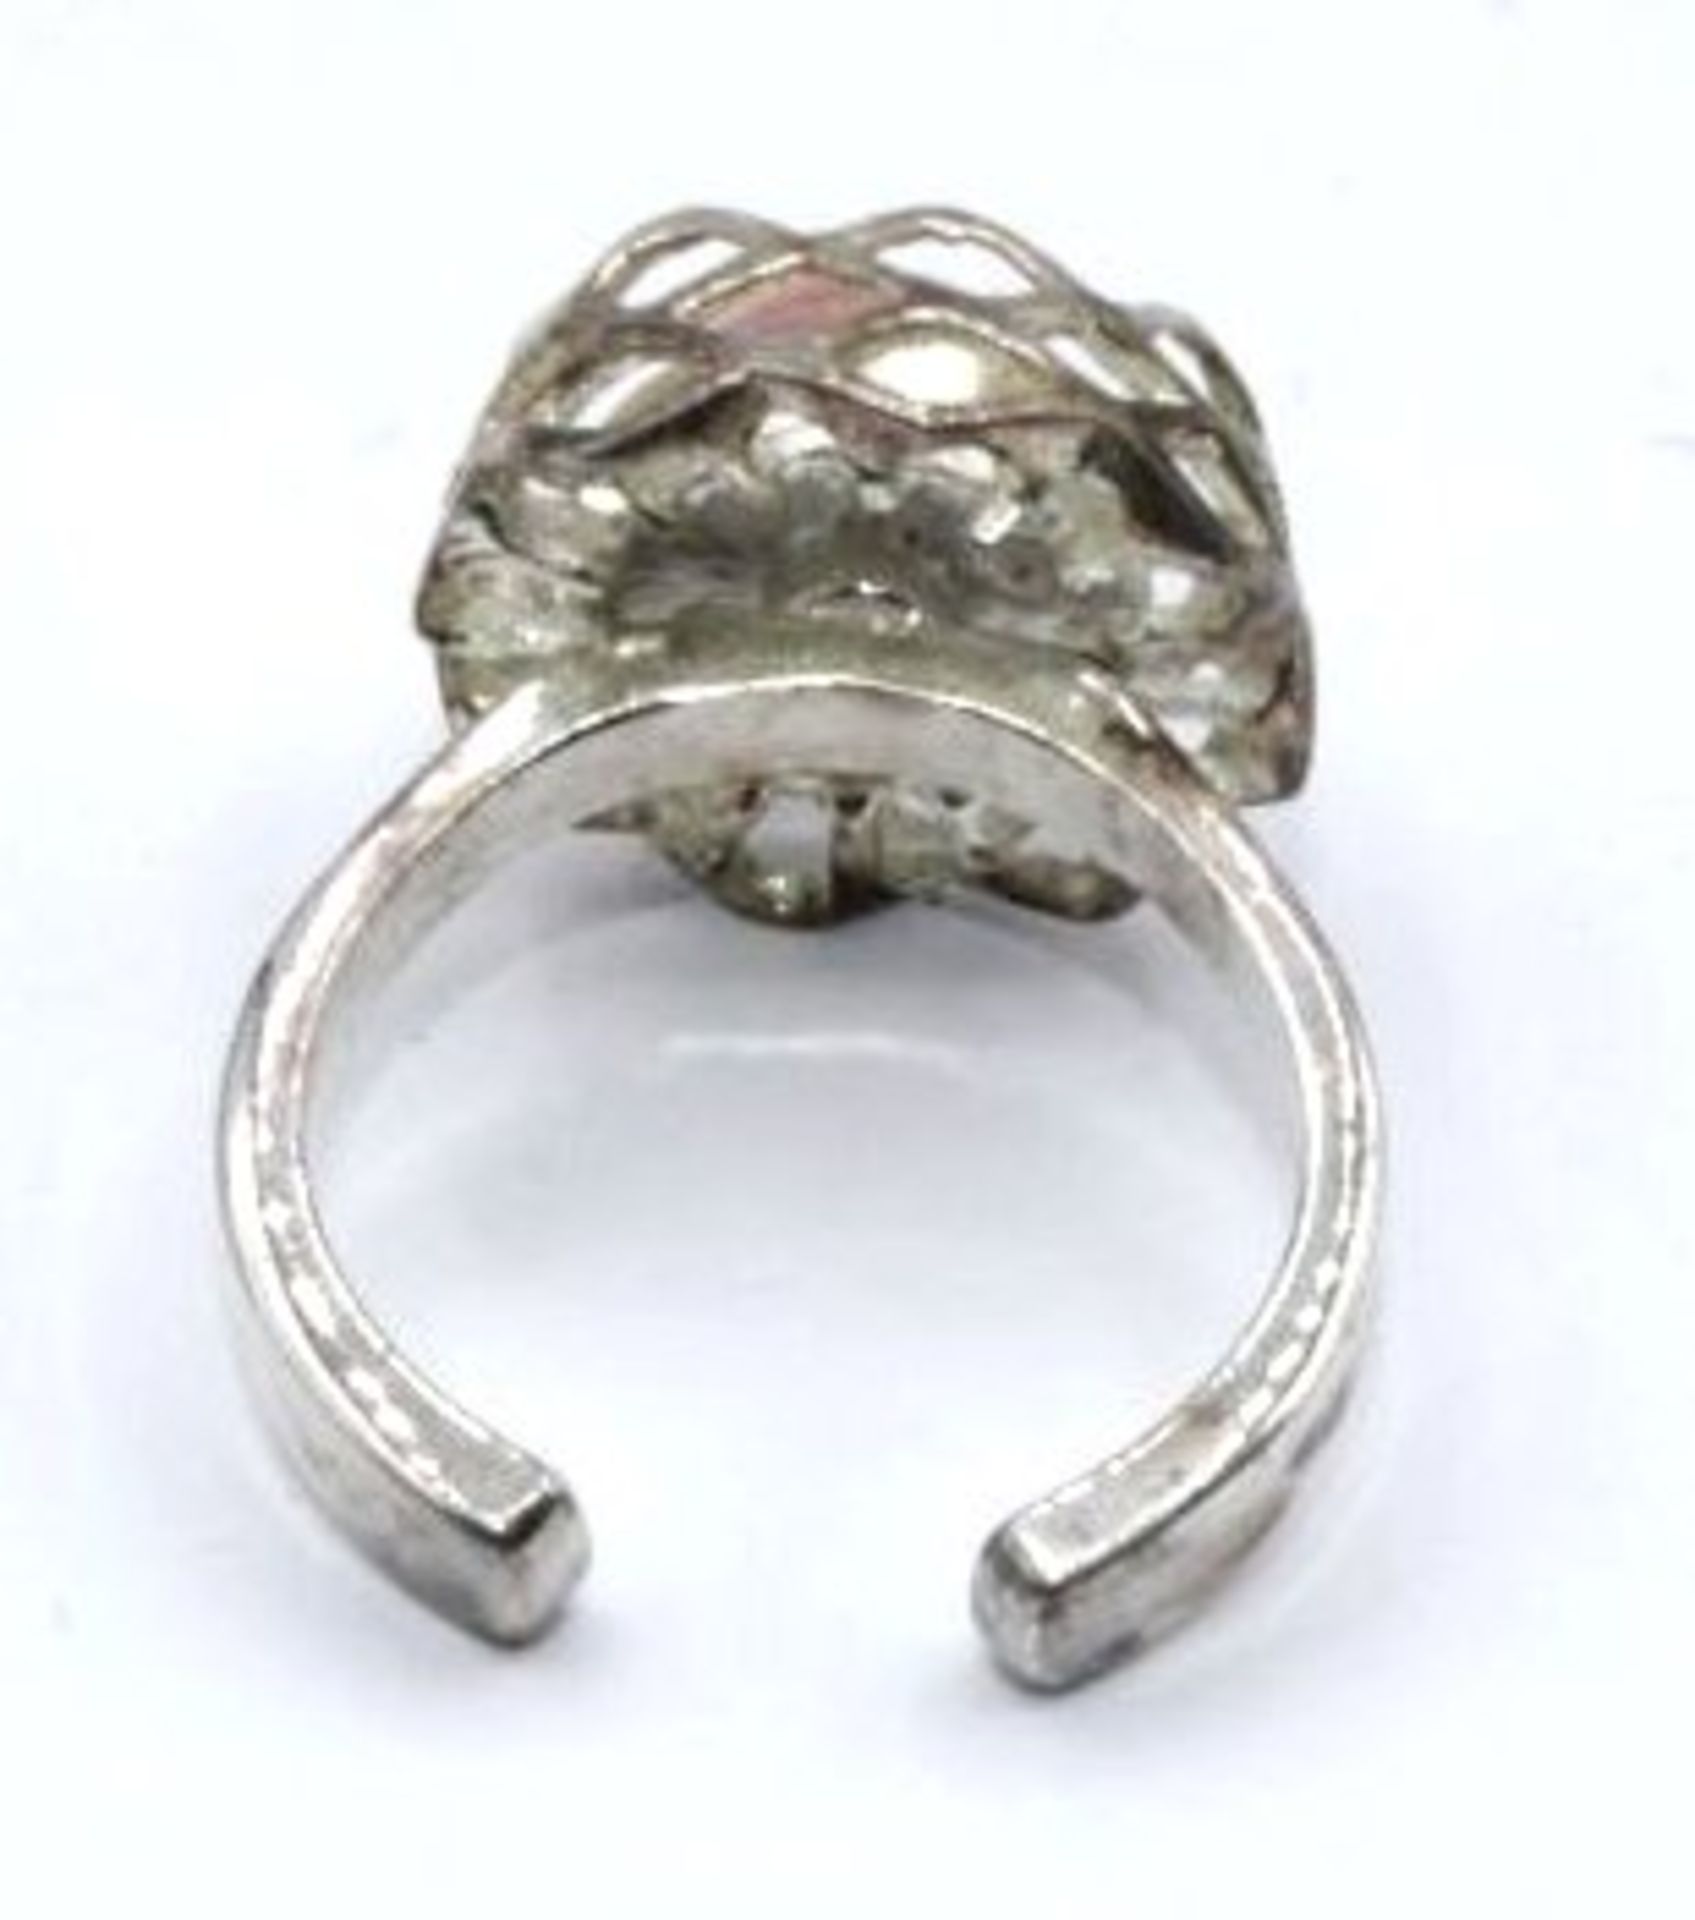 835er Silber-Ring mit Rosenquartz, 6,5gr., offene Schiene. - Bild 2 aus 2